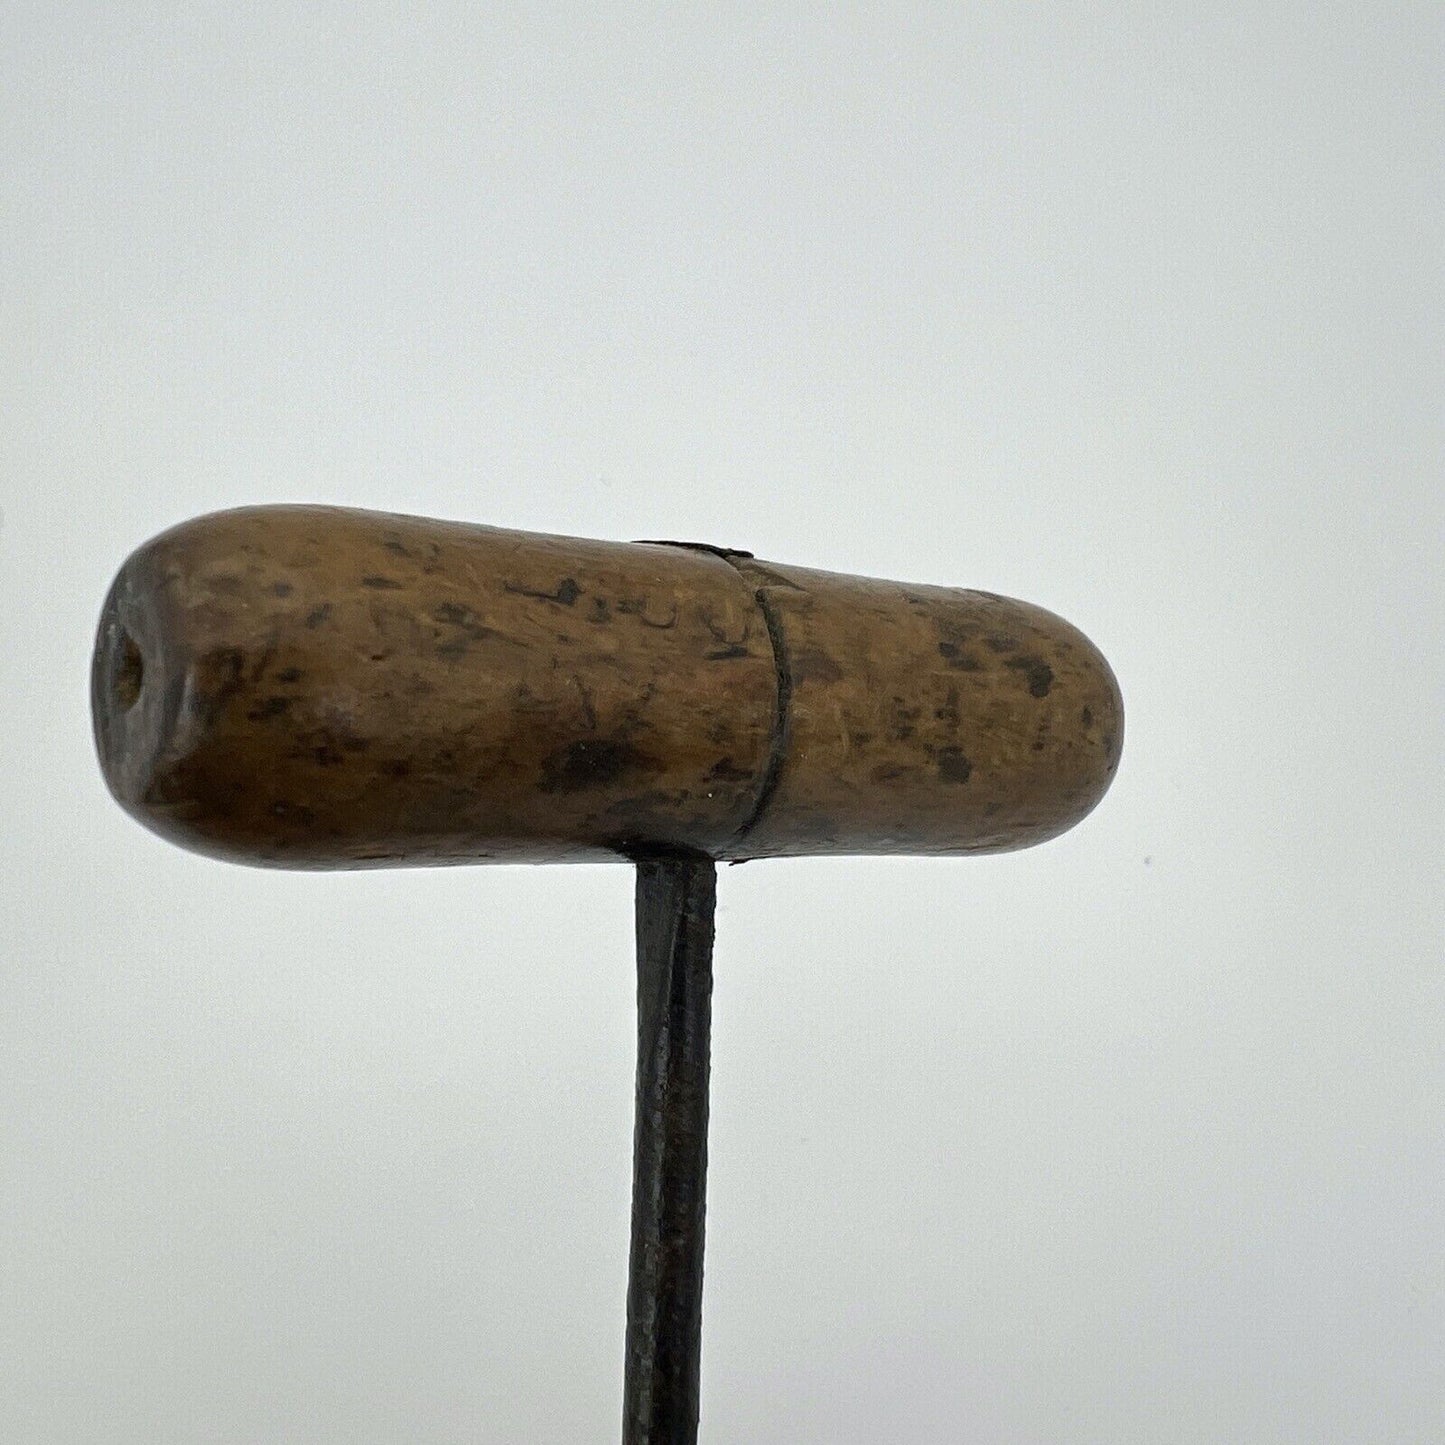 Punteruolo Succhiello Trivellino Antico In legno ferro trapano ferramenta 4 mm